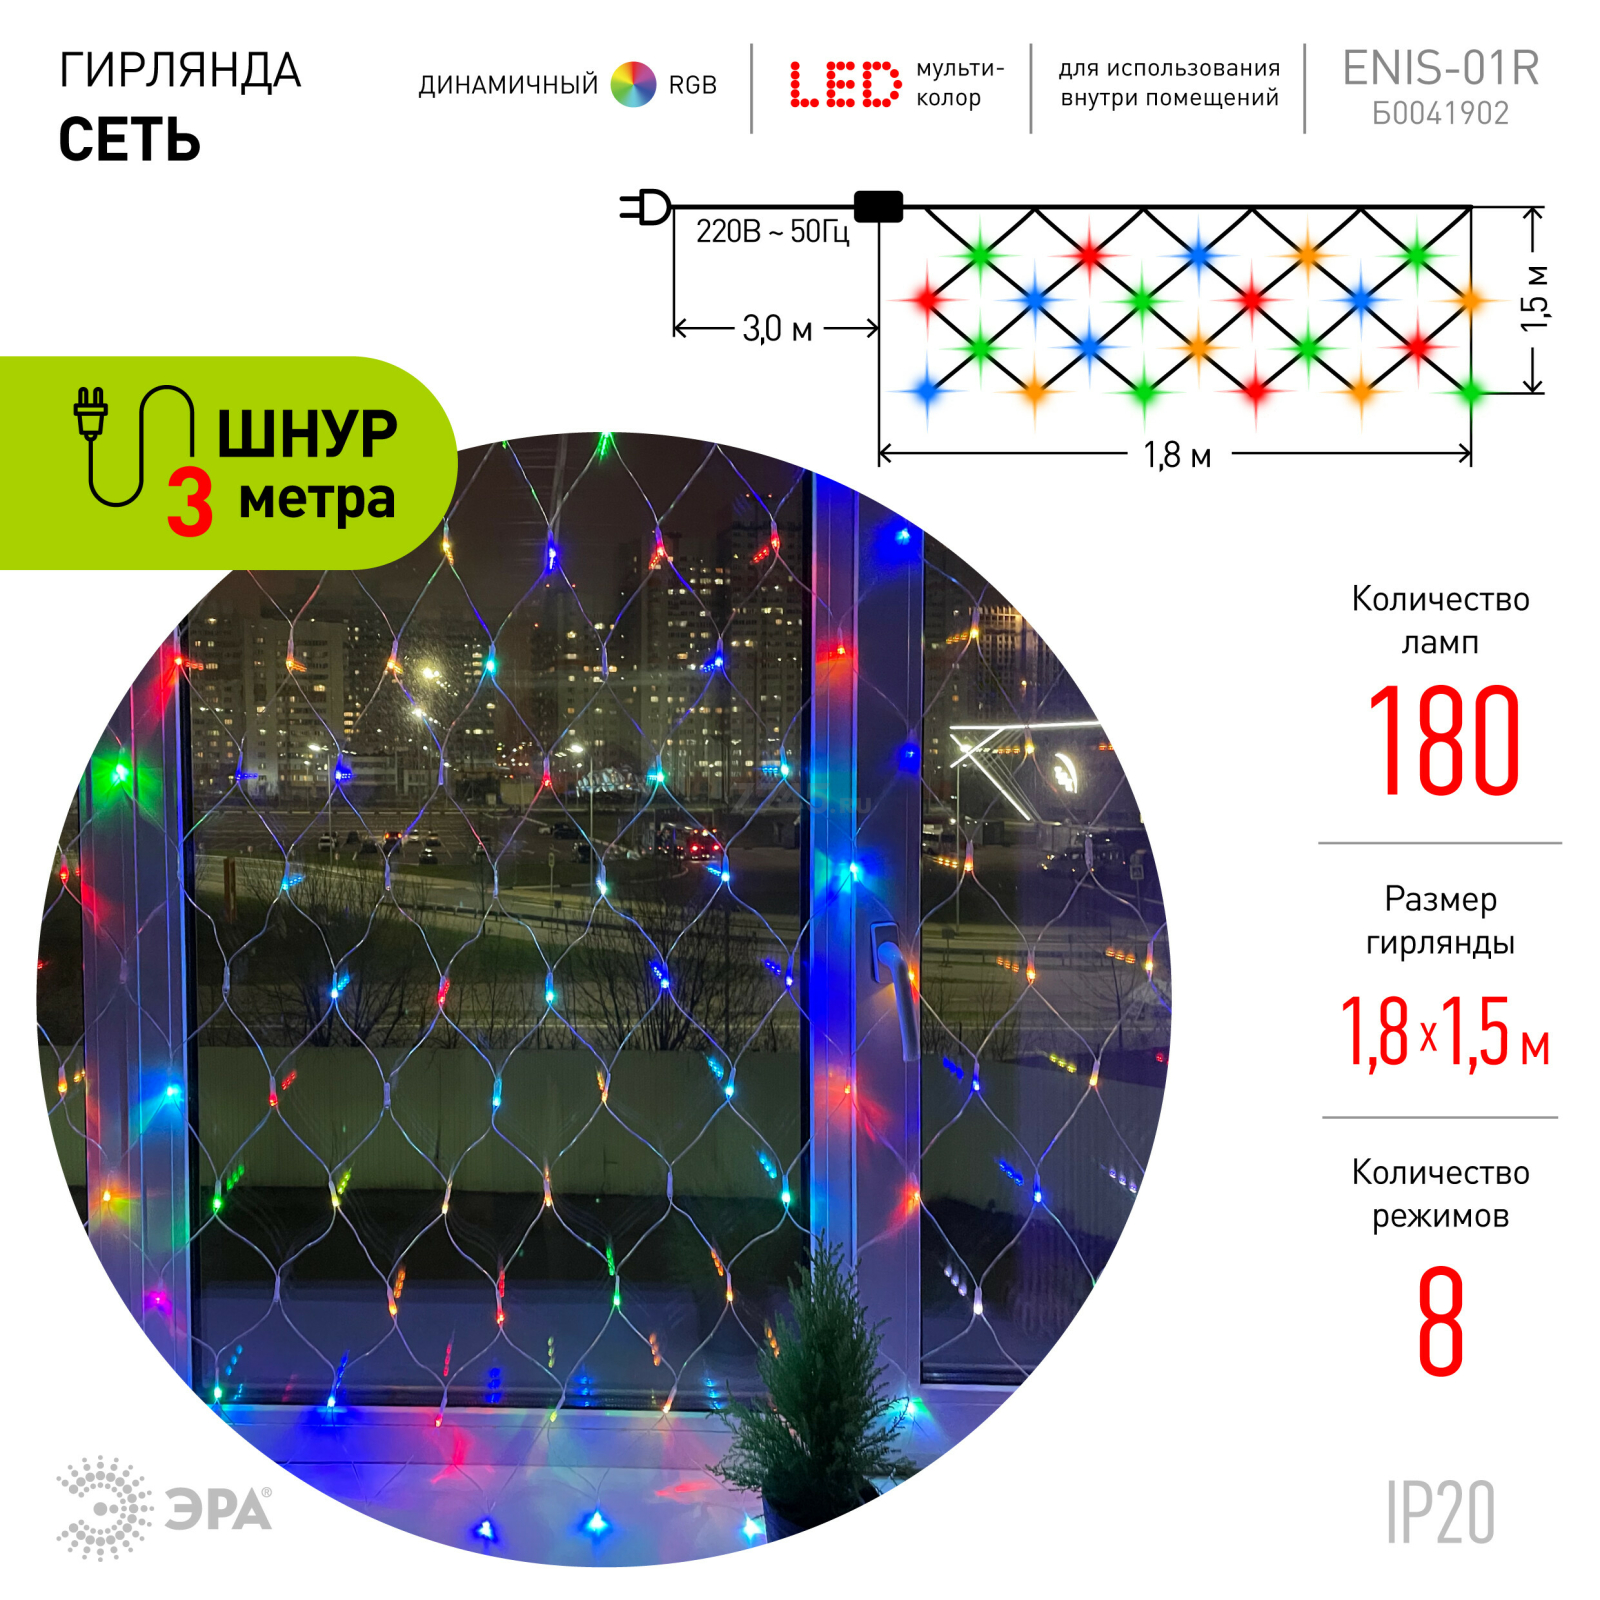 Гирлянда новогодняя светодиодная ЭРА Enis-01R Сеть 1,8х1,5 м 180 диодов RGB - Фото 2